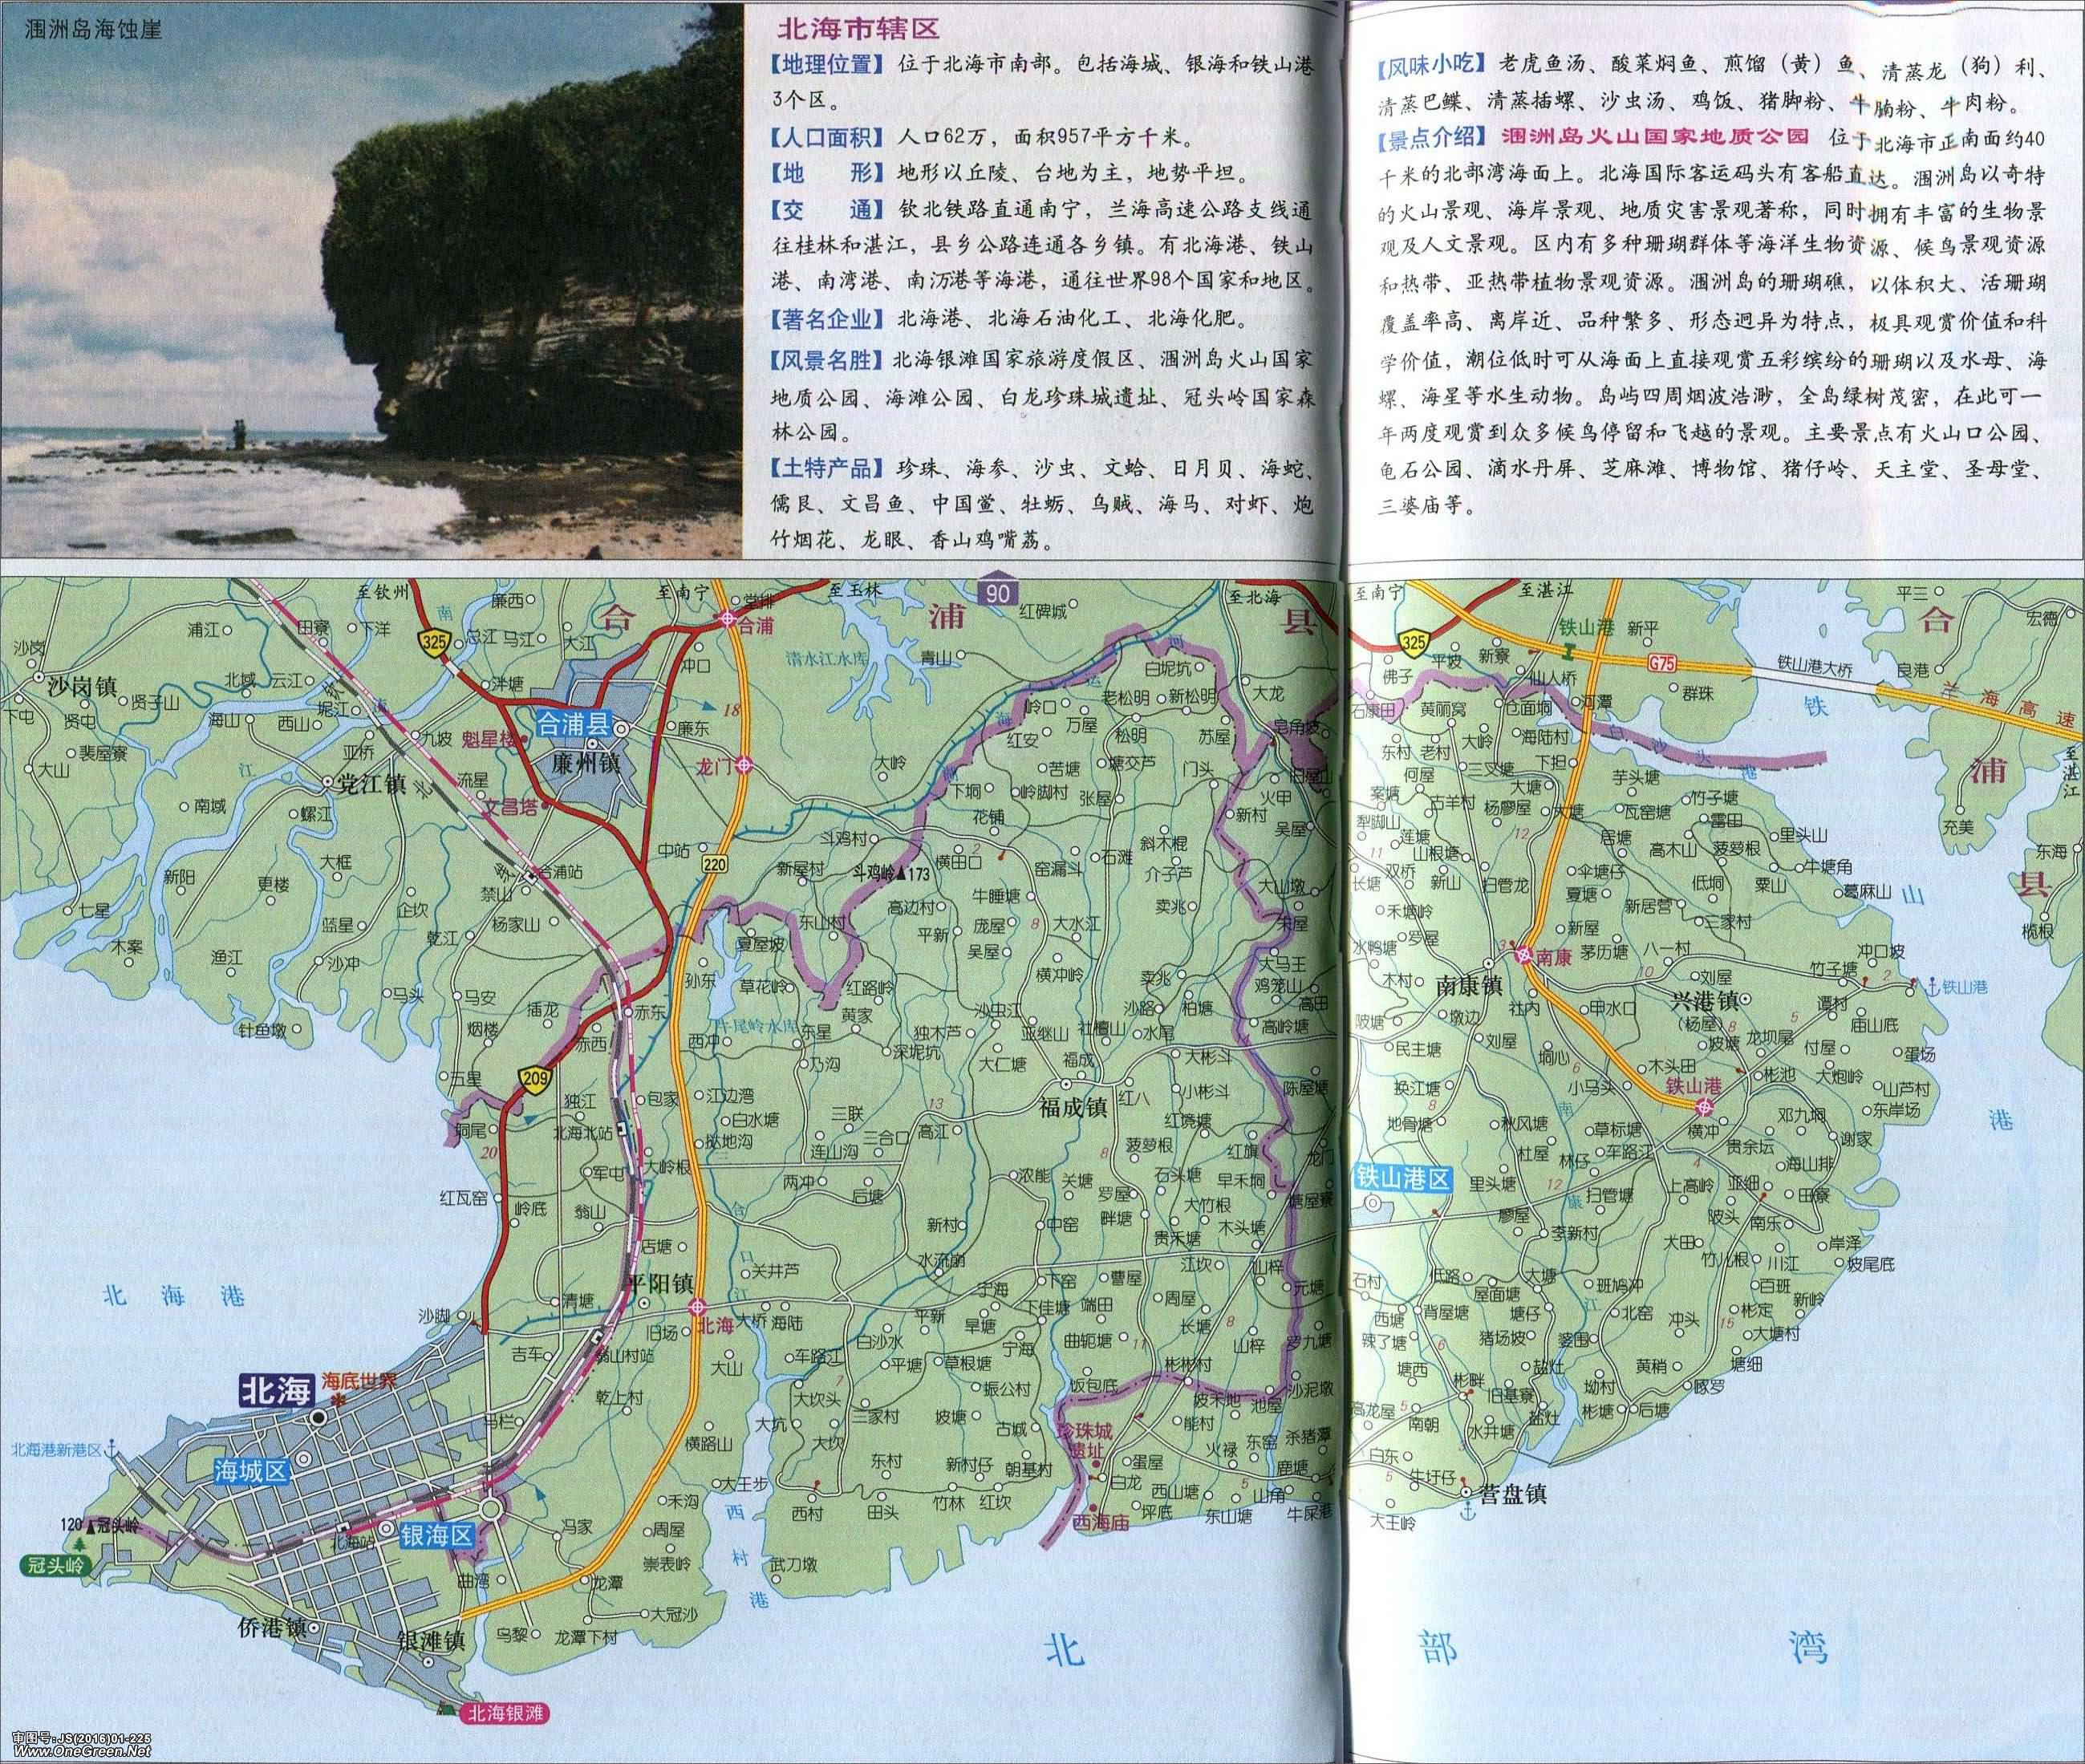 防城港  钦州  贵港  玉林  百色  河池  来宾  崇左 上一张地图图片